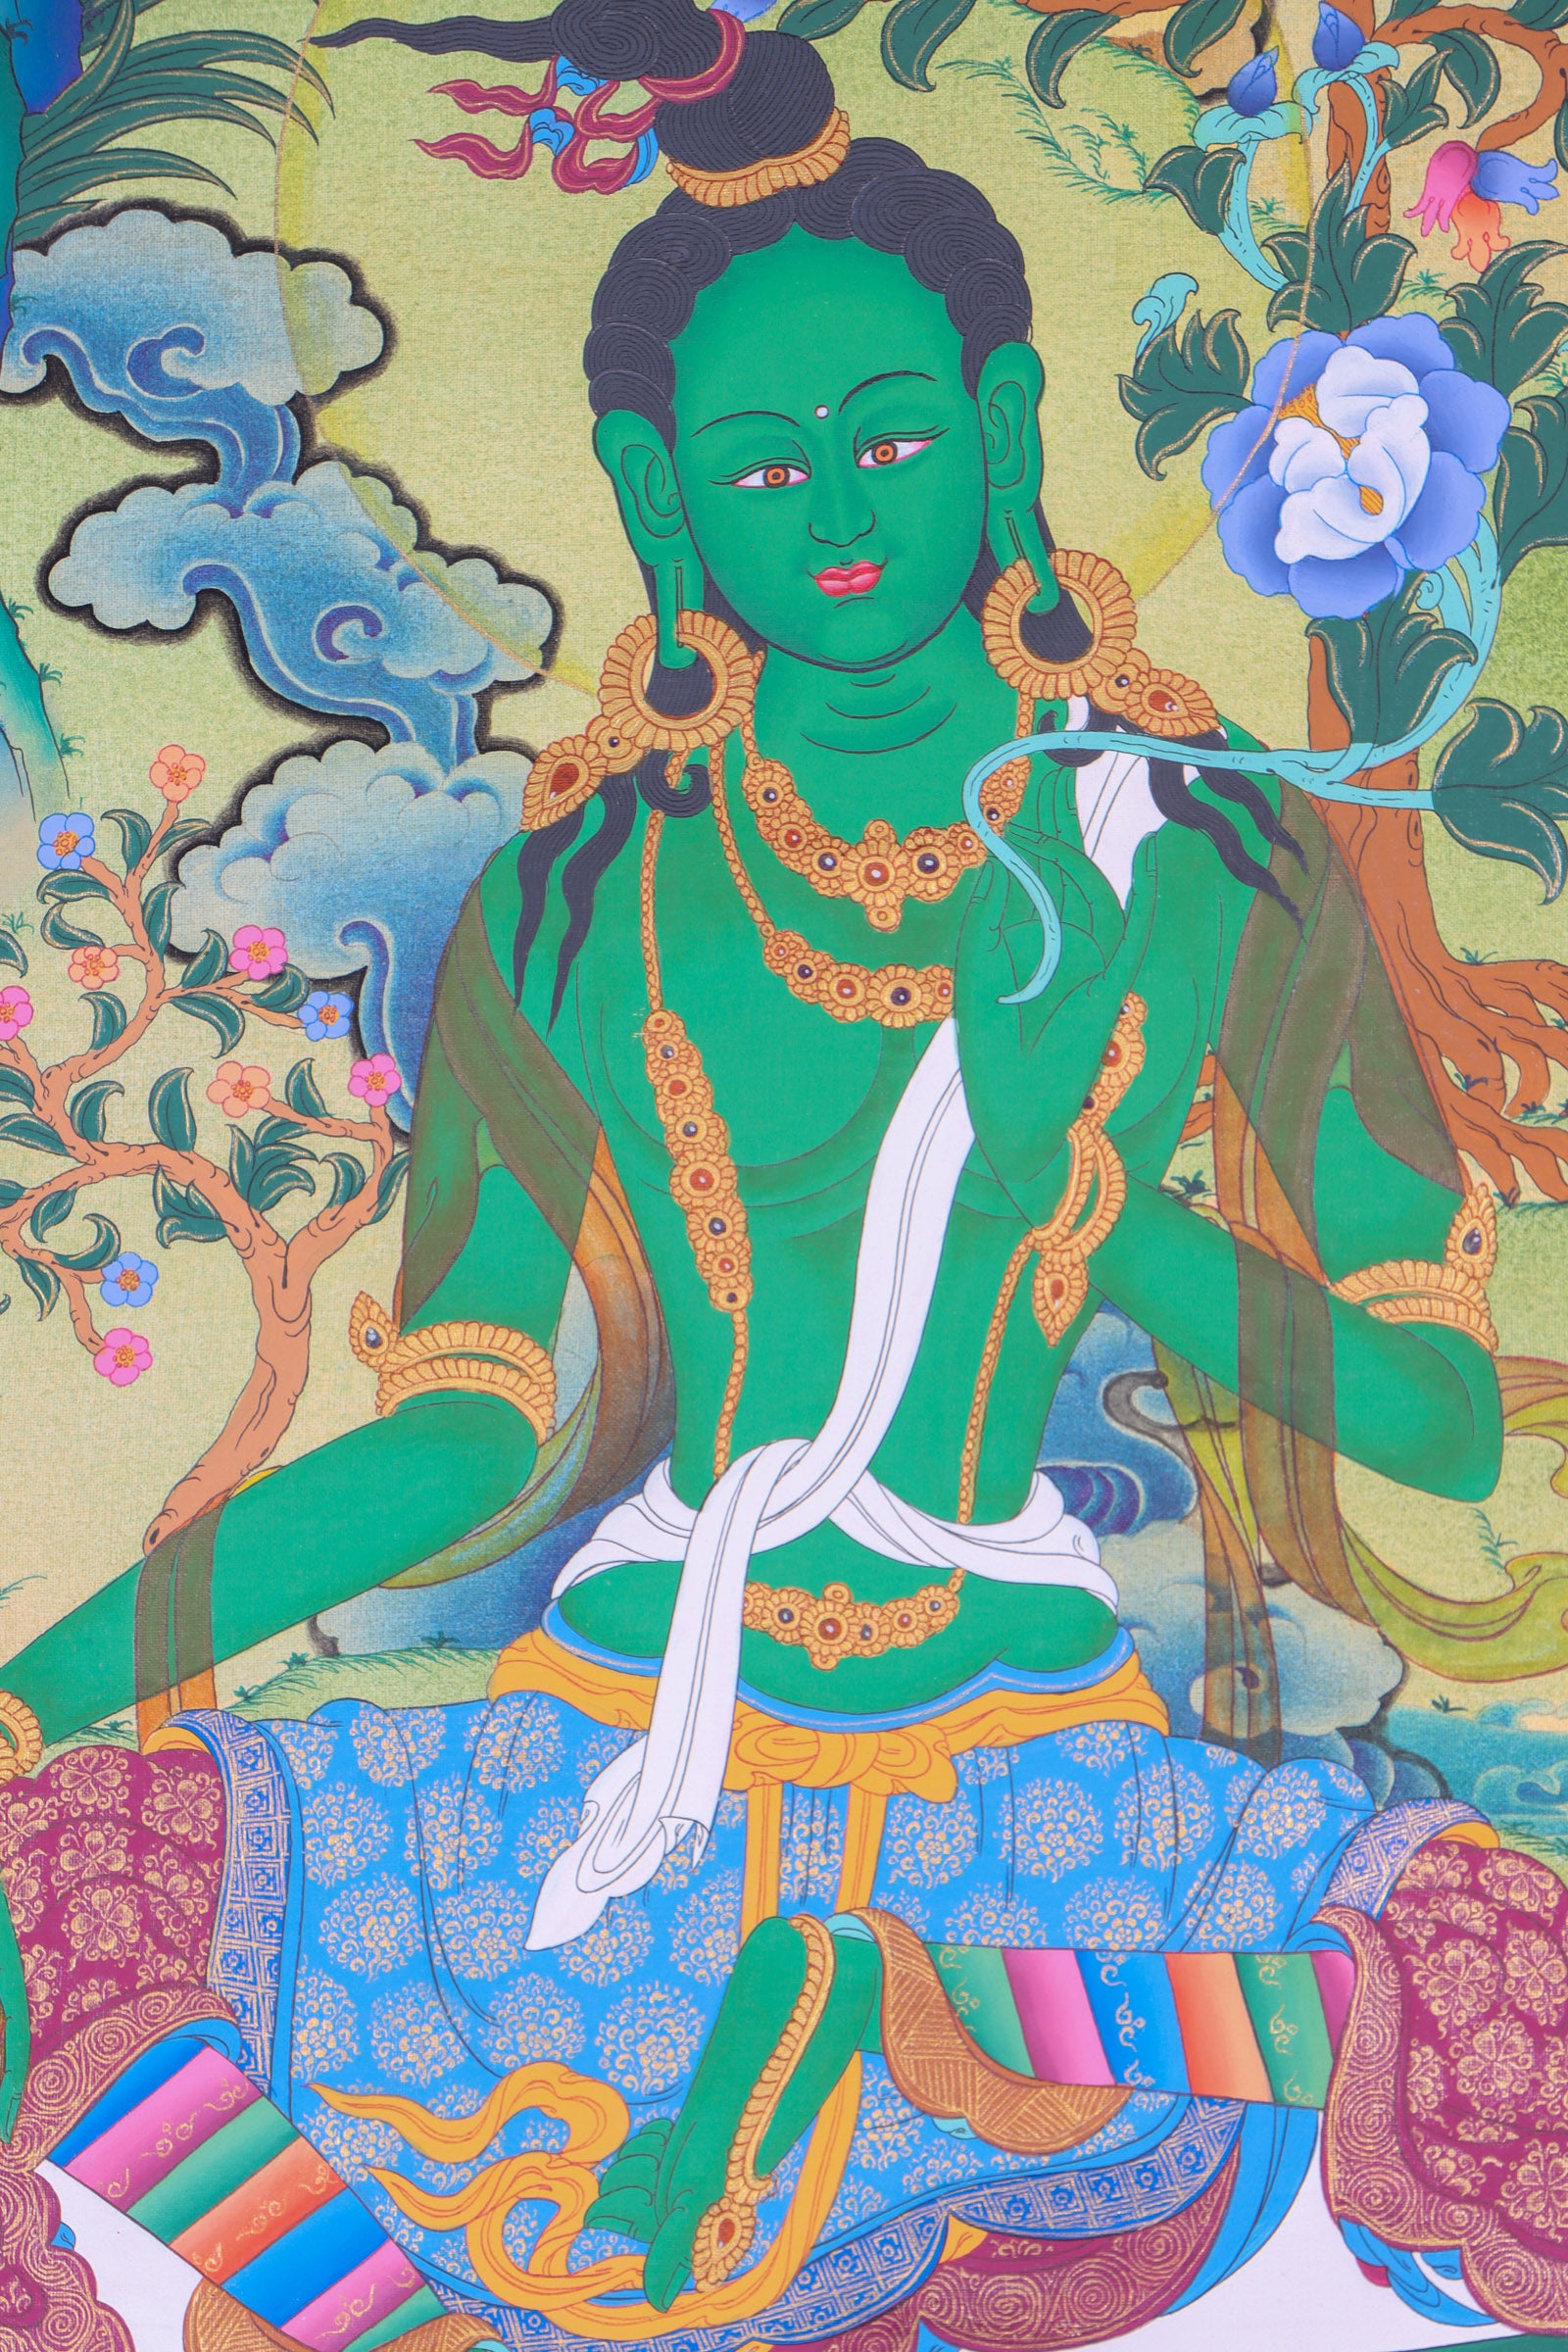 Green Tara Thangka Painting for wall decor.